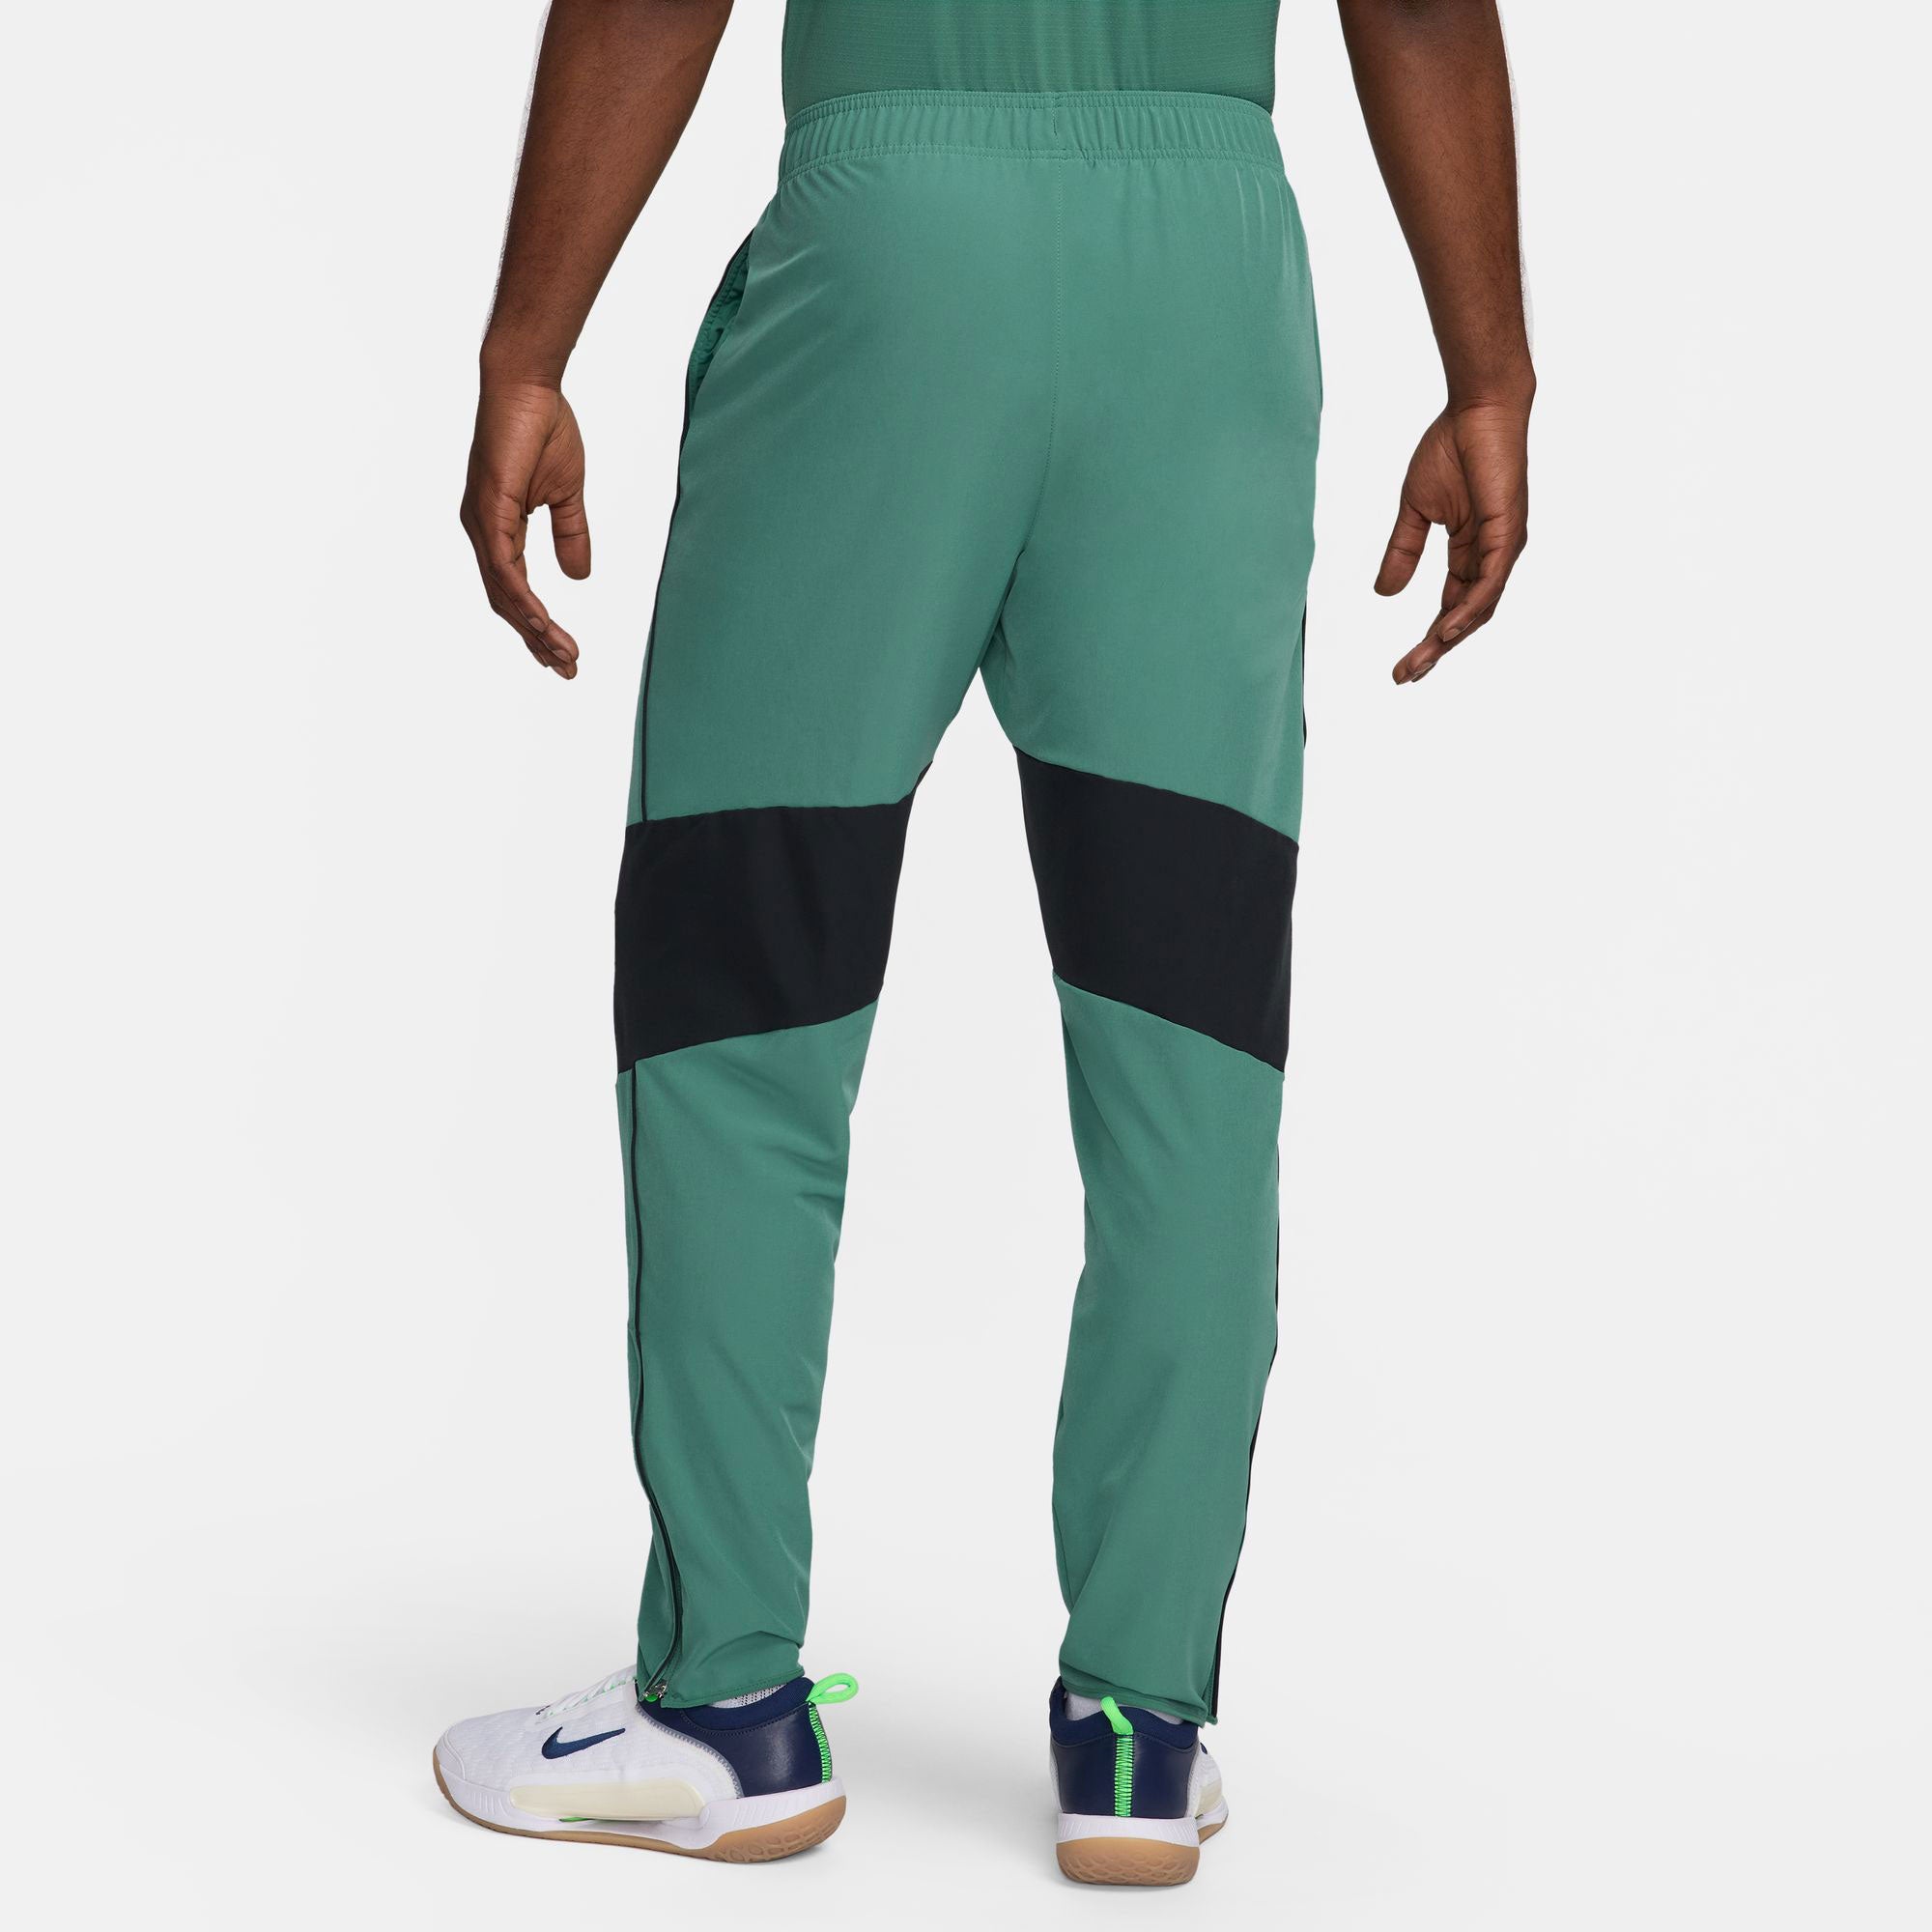 NikeCourt Advantage Men's Dri-FIT Tennis Pants - Green (2)